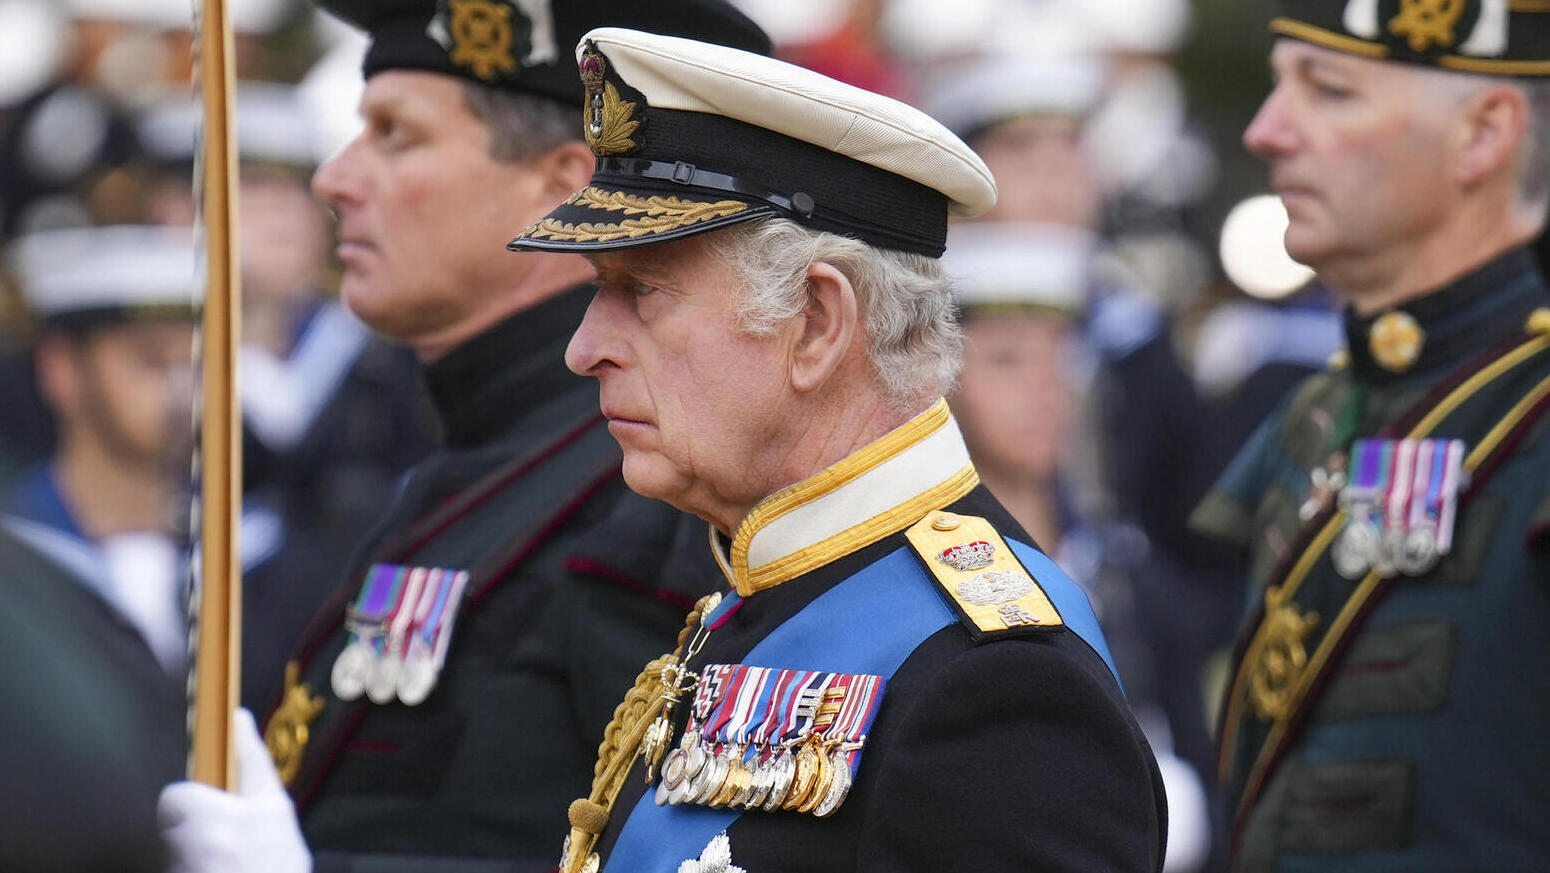 המלך צ'רלס הולך אחרי ארון המלכה שמובל על כרכרה ב ווסטמינסטר בריטניה לונדון הלוויה הלוויית המלכה אלי 